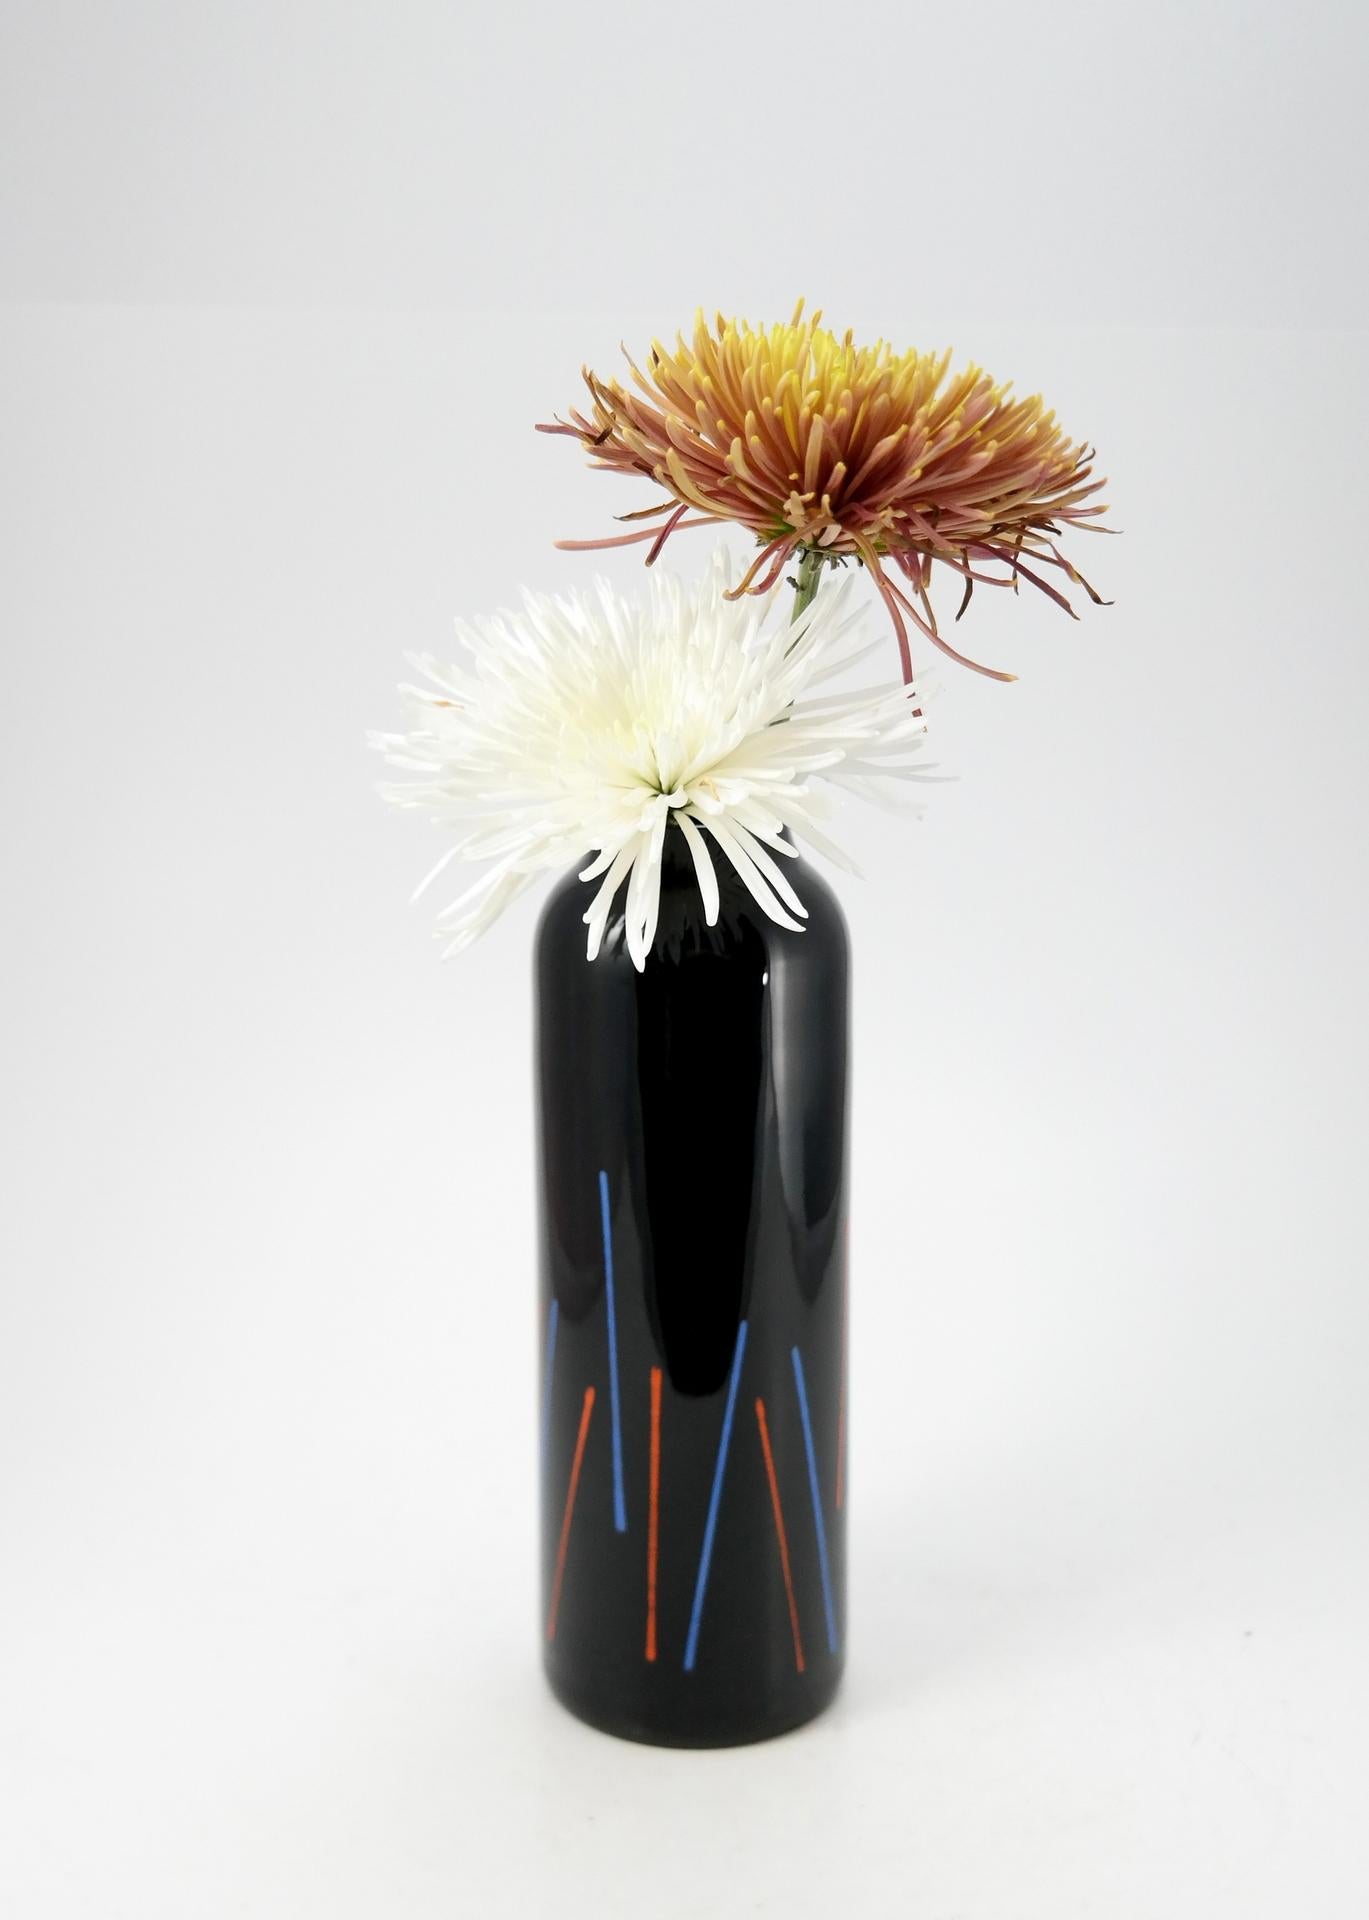 Czech Black glass designer vase by Marcela Vosmikova for Crystalex, Novy Bor, in 1988. For Sale